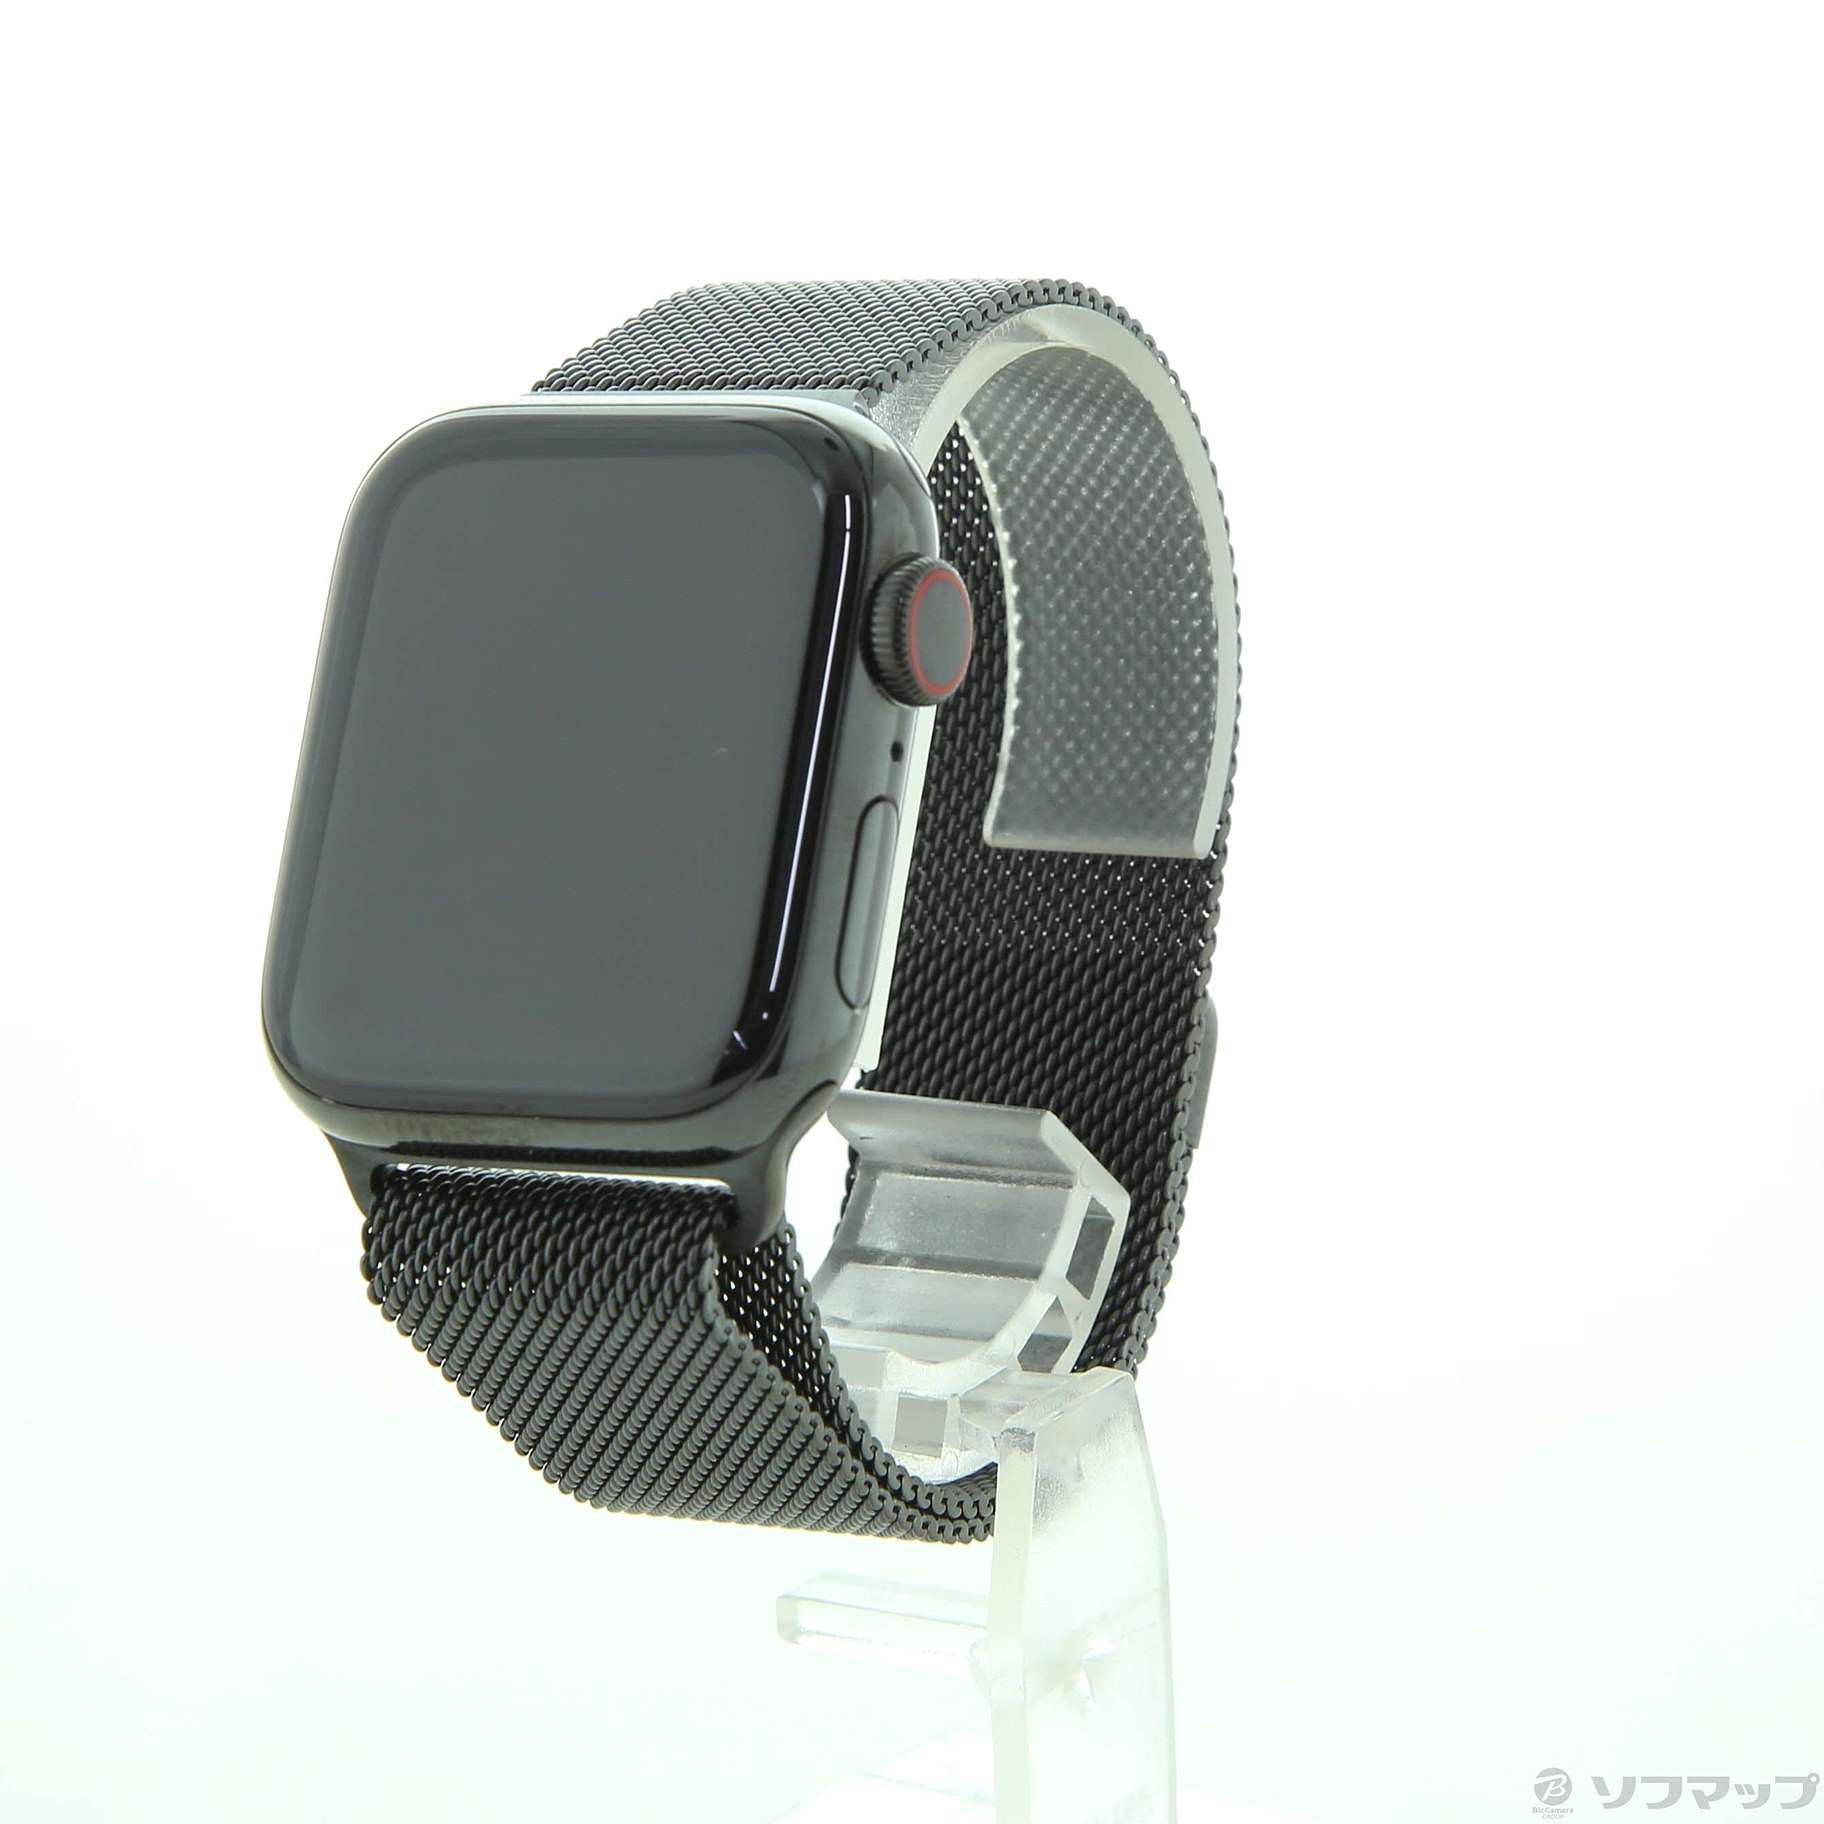 〔展示品〕 Apple Watch Series 4 GPS + Cellular 40mm スペースブラックステンレススチールケース  スペースブラックミラネーゼループ